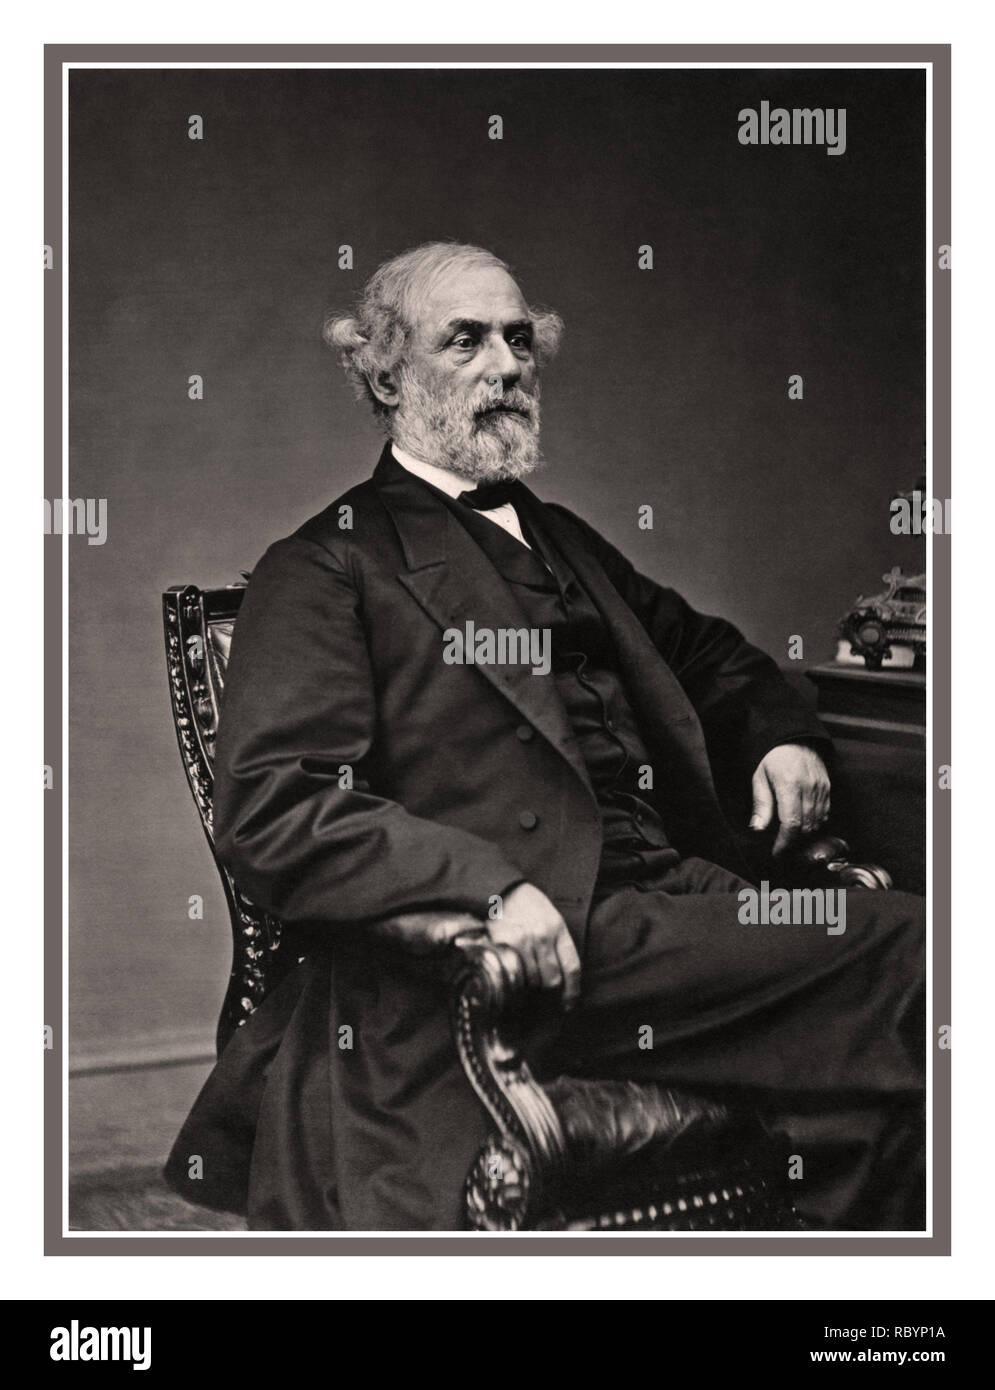 ROBERT E LEE Archive 1860's B&W formale di immagine ritratto del generale confederato Robert E. Lee nel maggio 1869 il generale in capo degli eserciti degli Stati Confederati Foto Stock